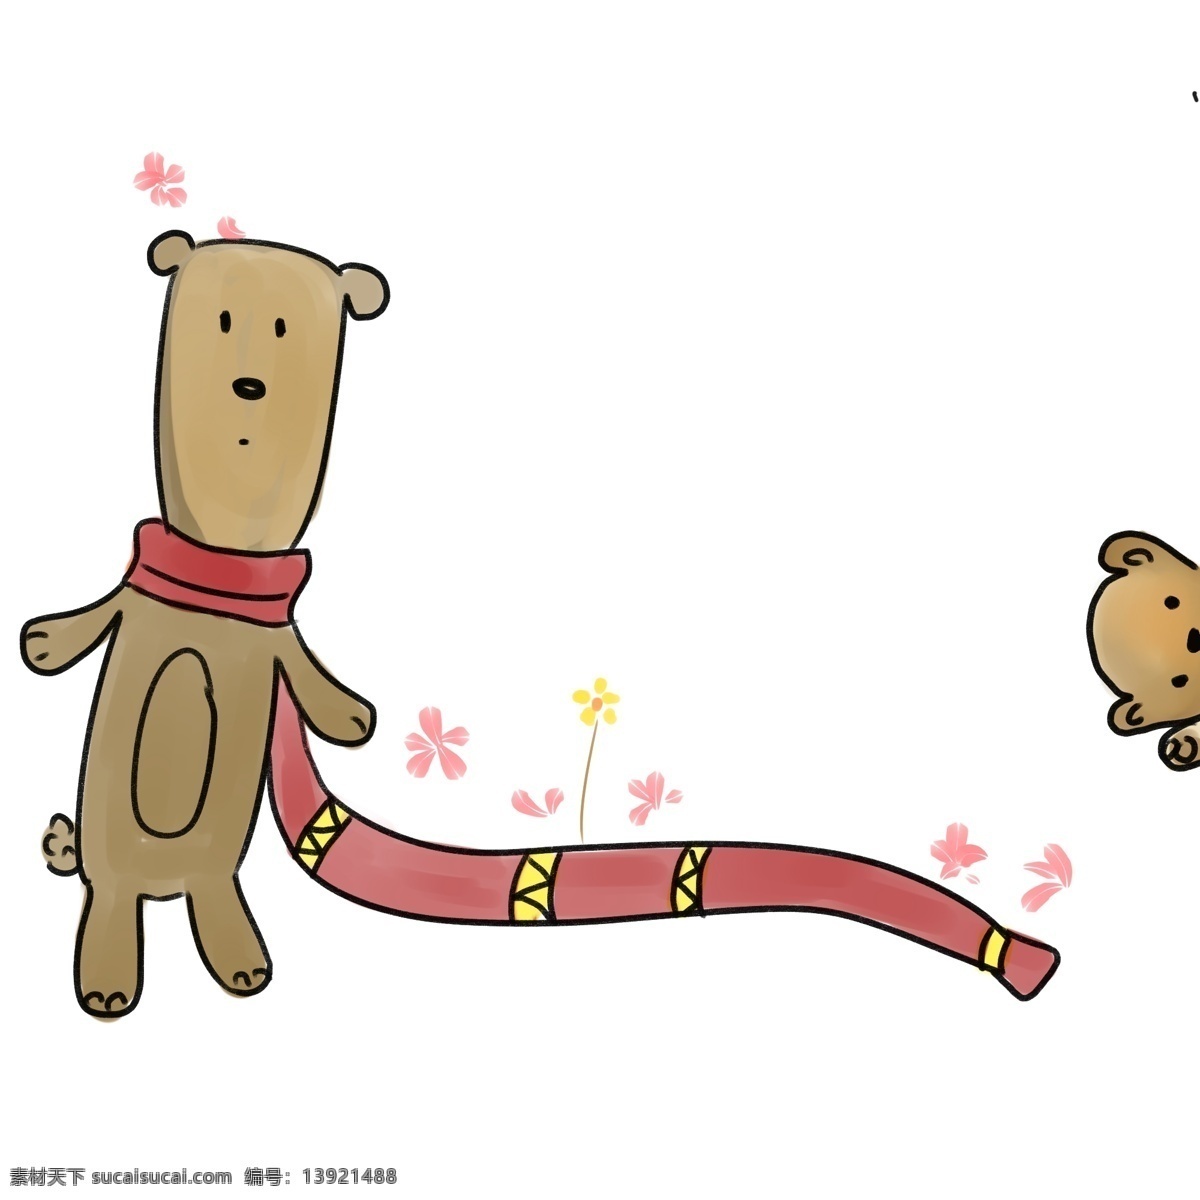 小 熊 围巾 分割线 插画 小熊 花朵 长长的围巾 分割线插画 动物割线 粉色花朵 围巾分割线 卡通可爱